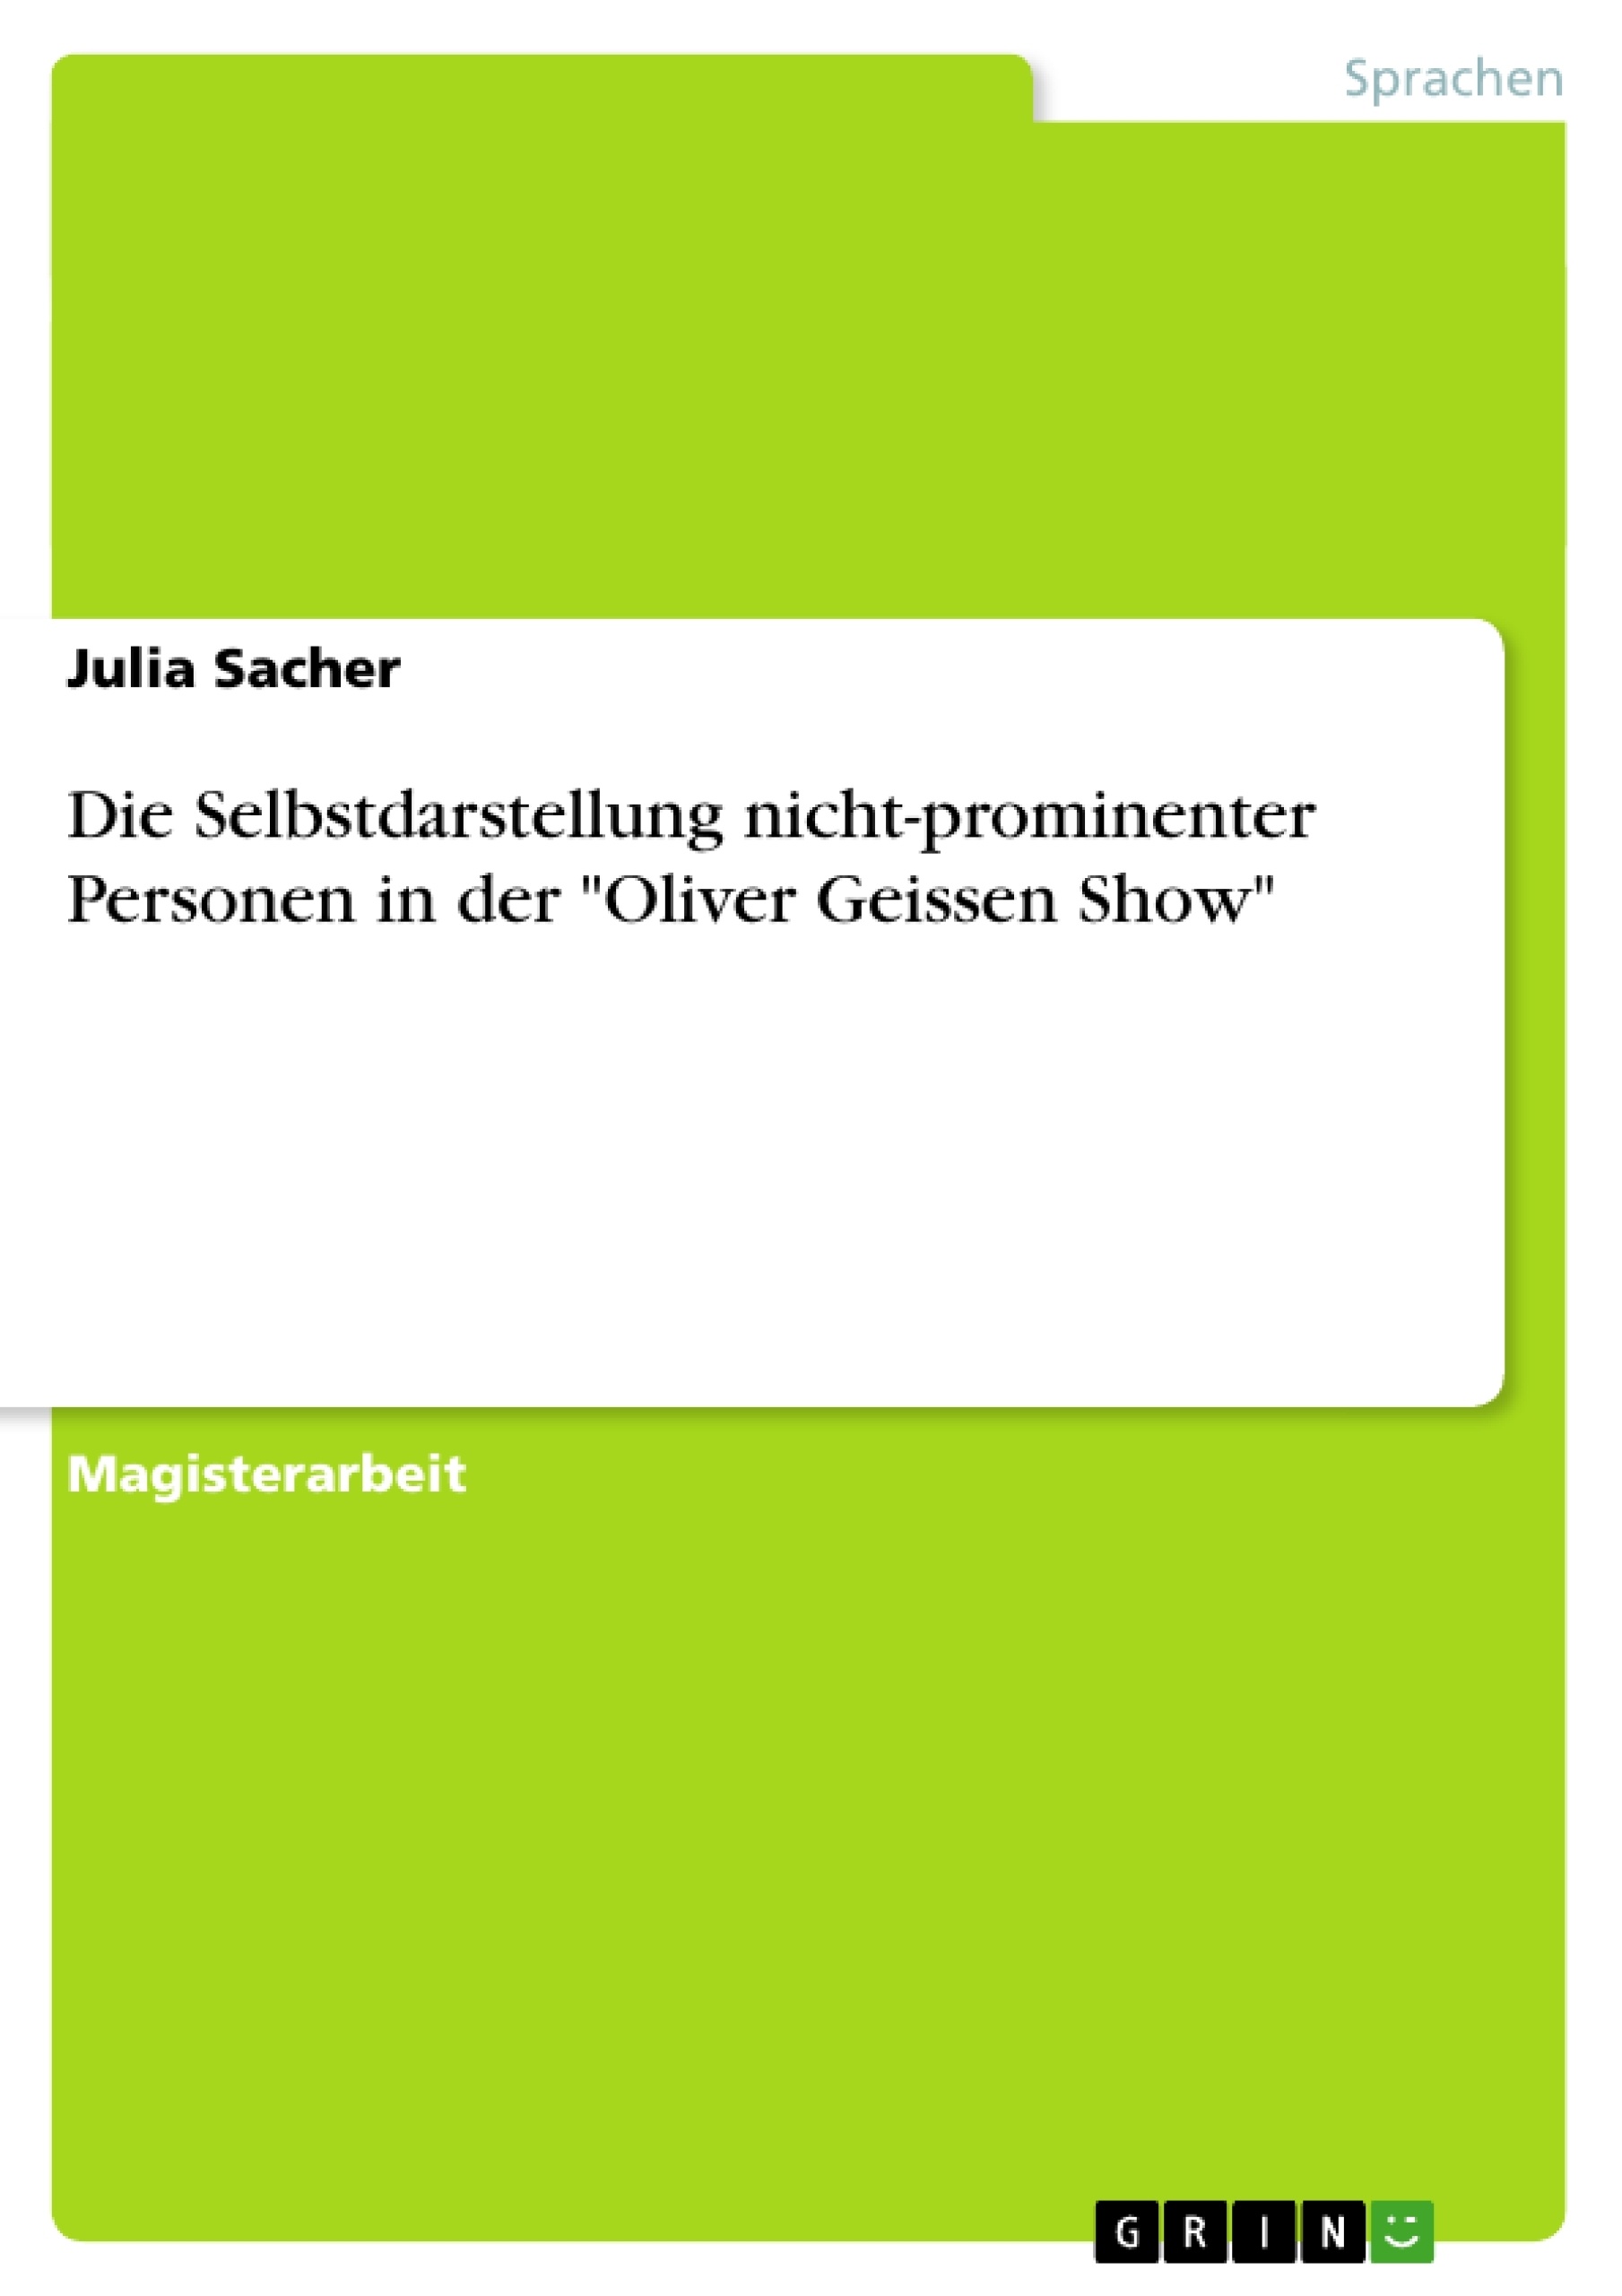 Title: Die Selbstdarstellung nicht-prominenter Personen in der "Oliver Geissen Show"